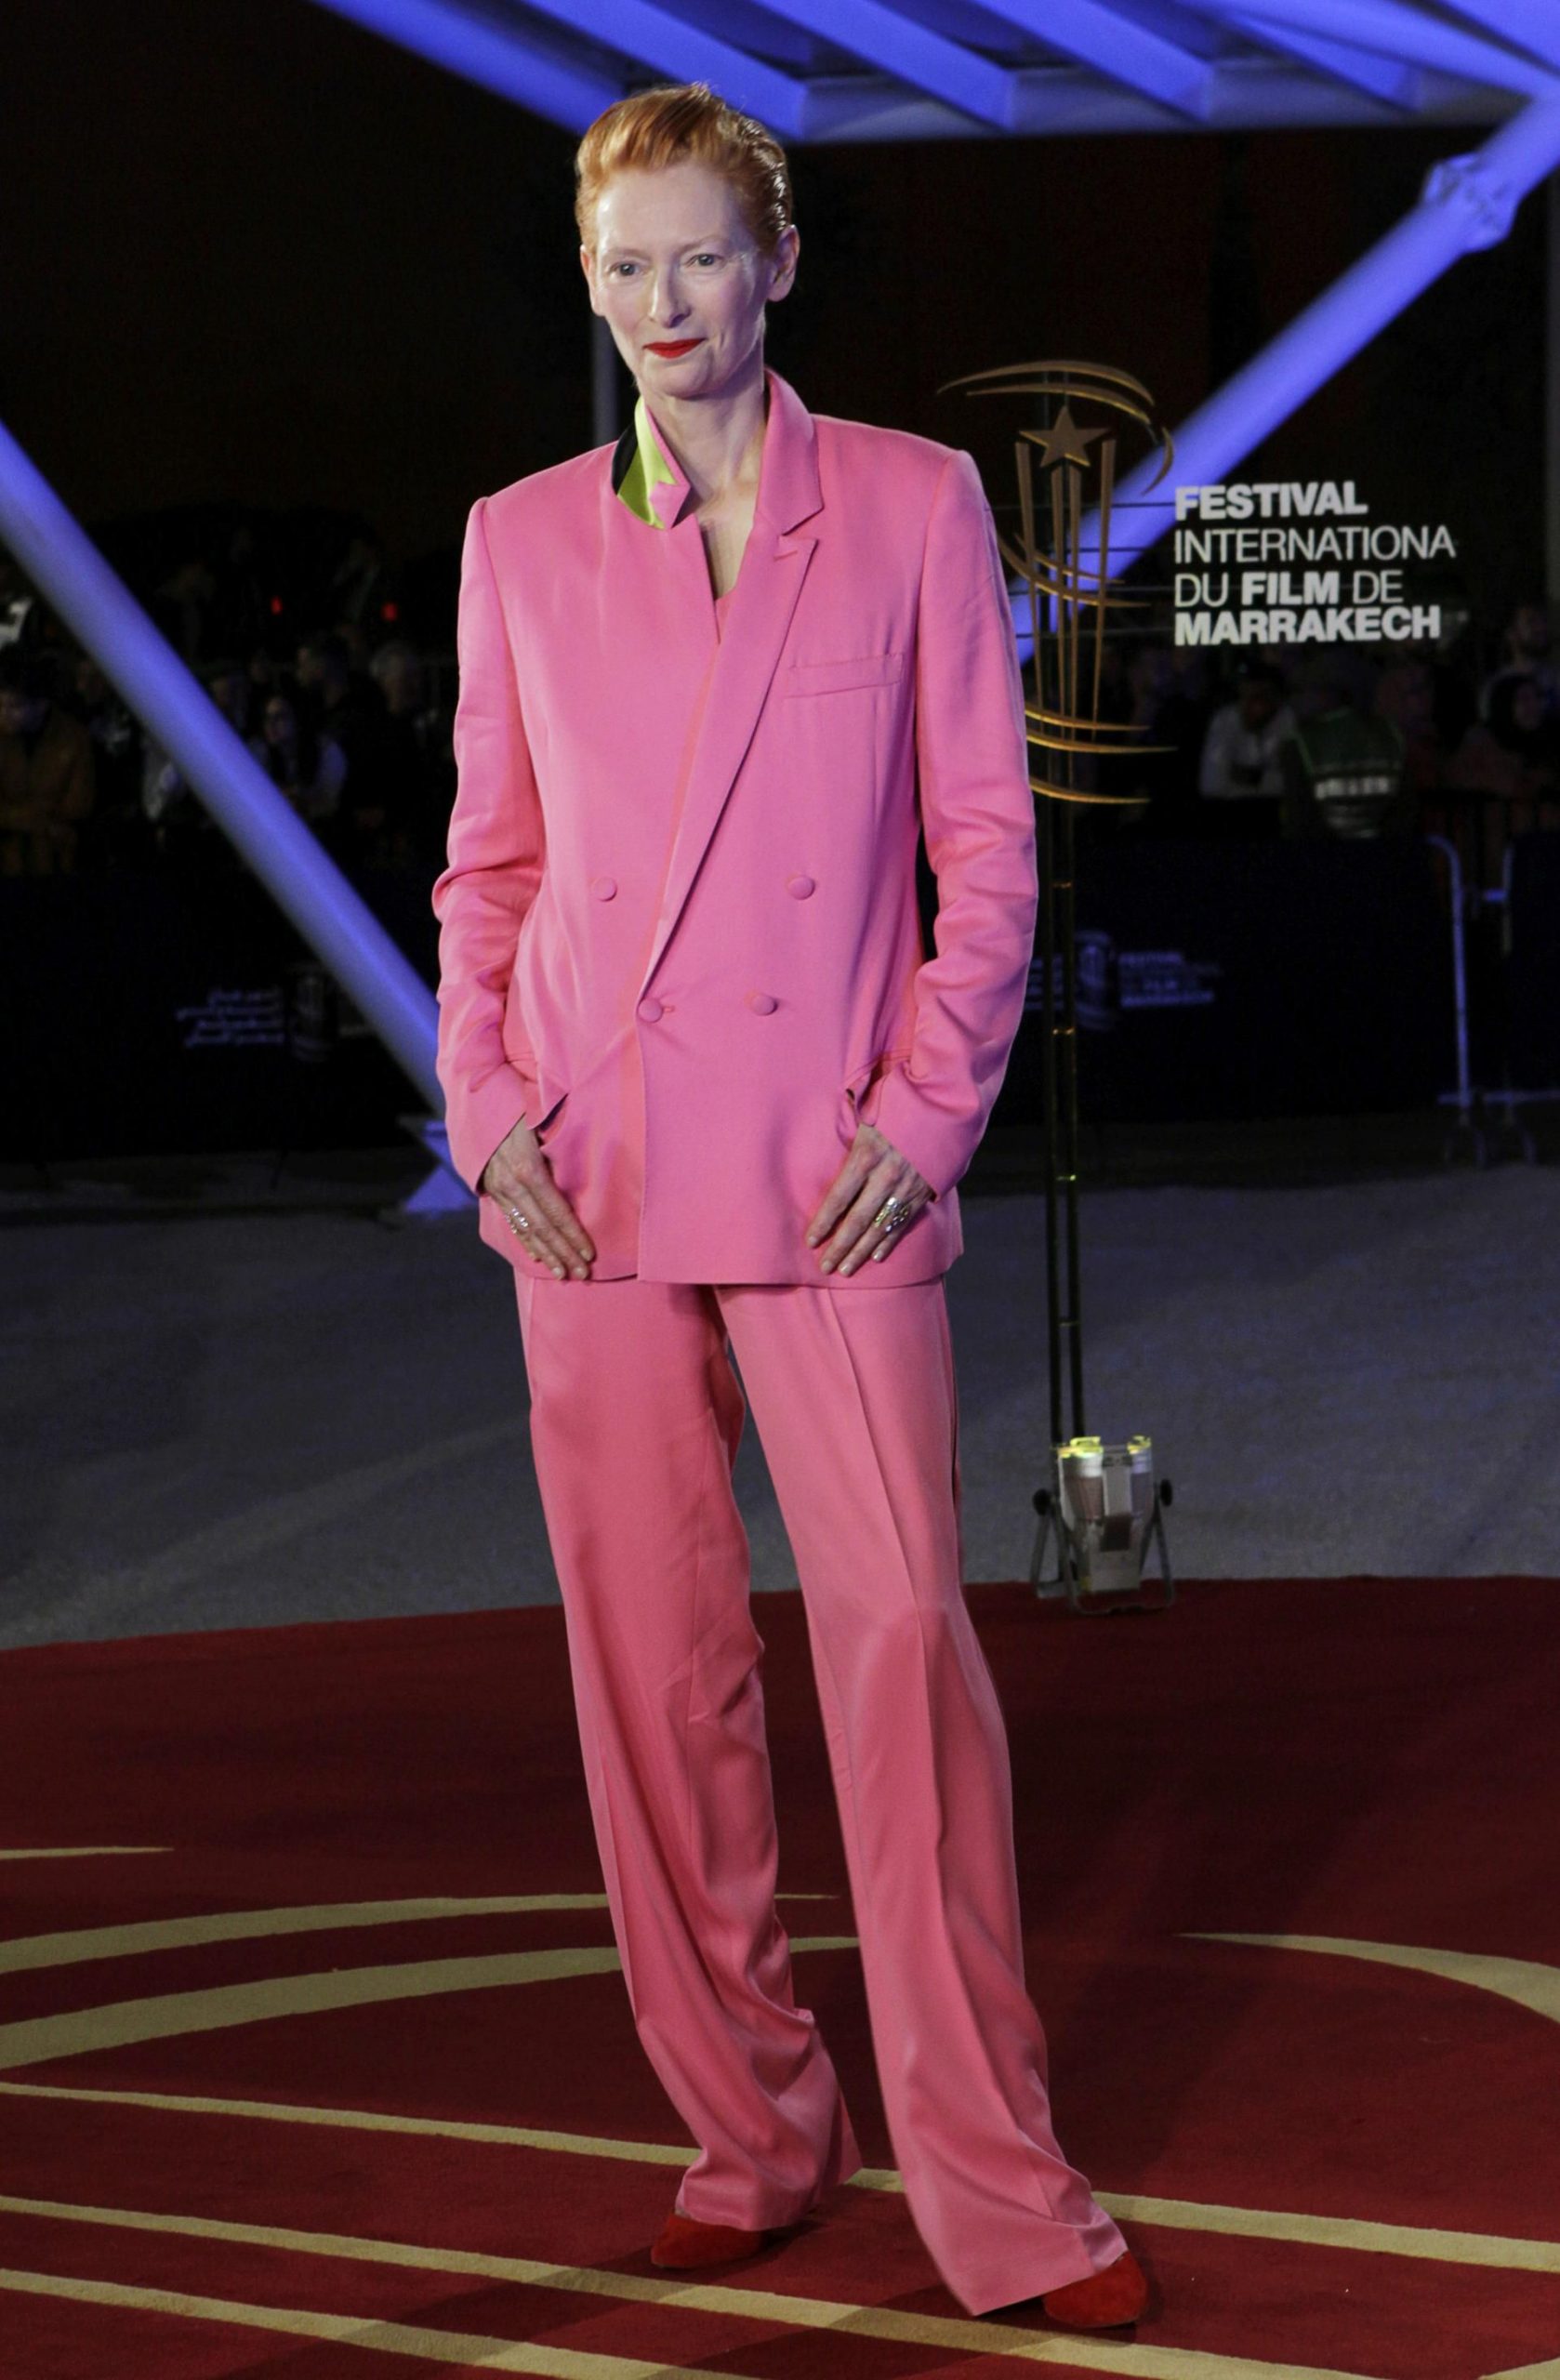 tilda swinton do mau hong scaled - The Pink Suit – Sức mạnh và quyền lực mềm từ bộ suit màu hồng